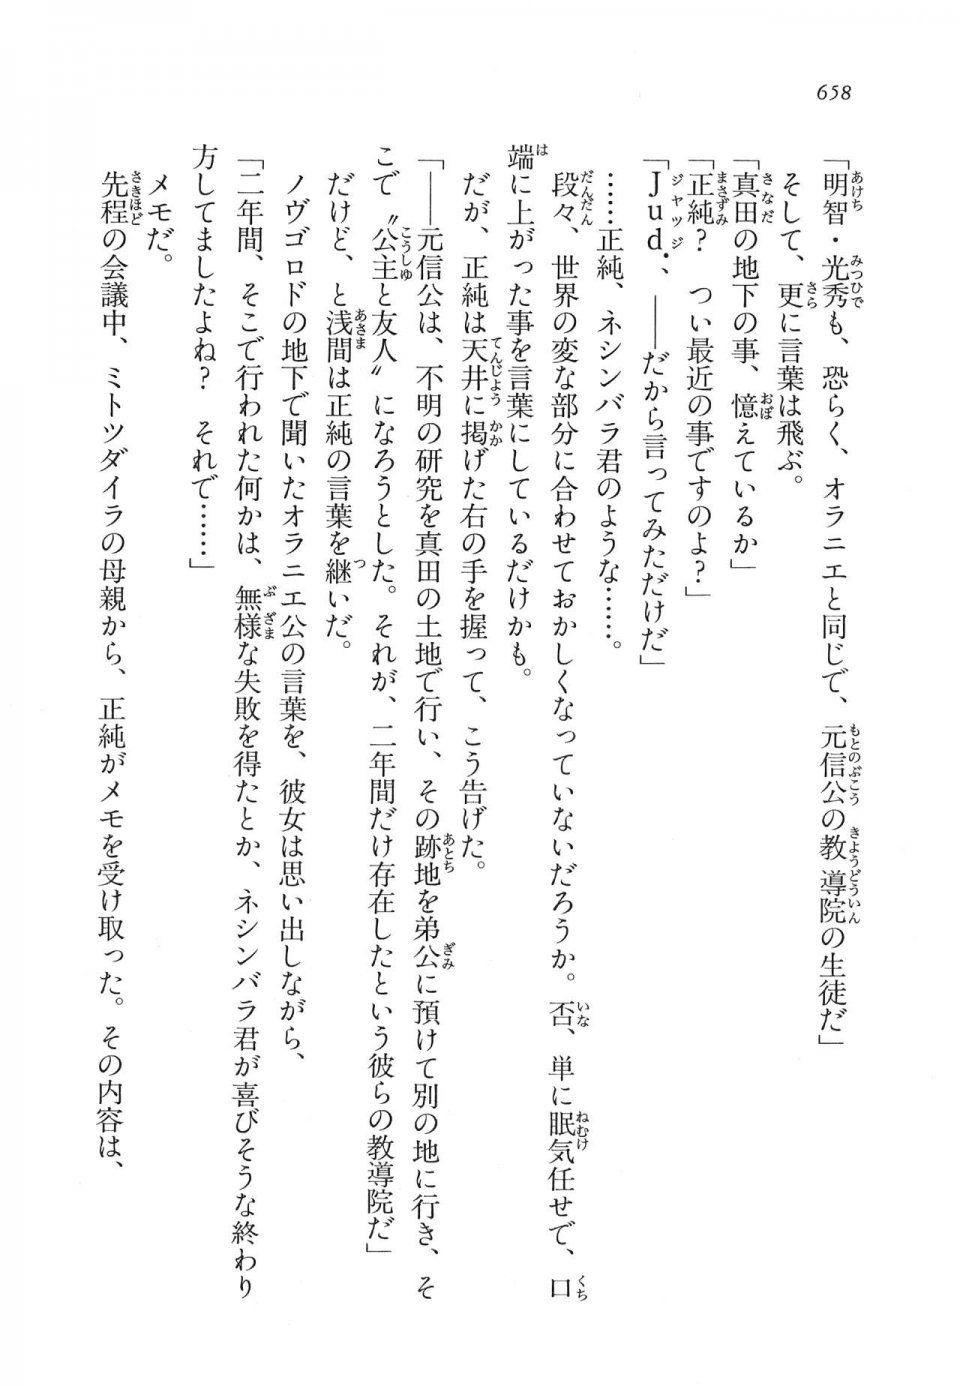 Kyoukai Senjou no Horizon LN Vol 16(7A) - Photo #658